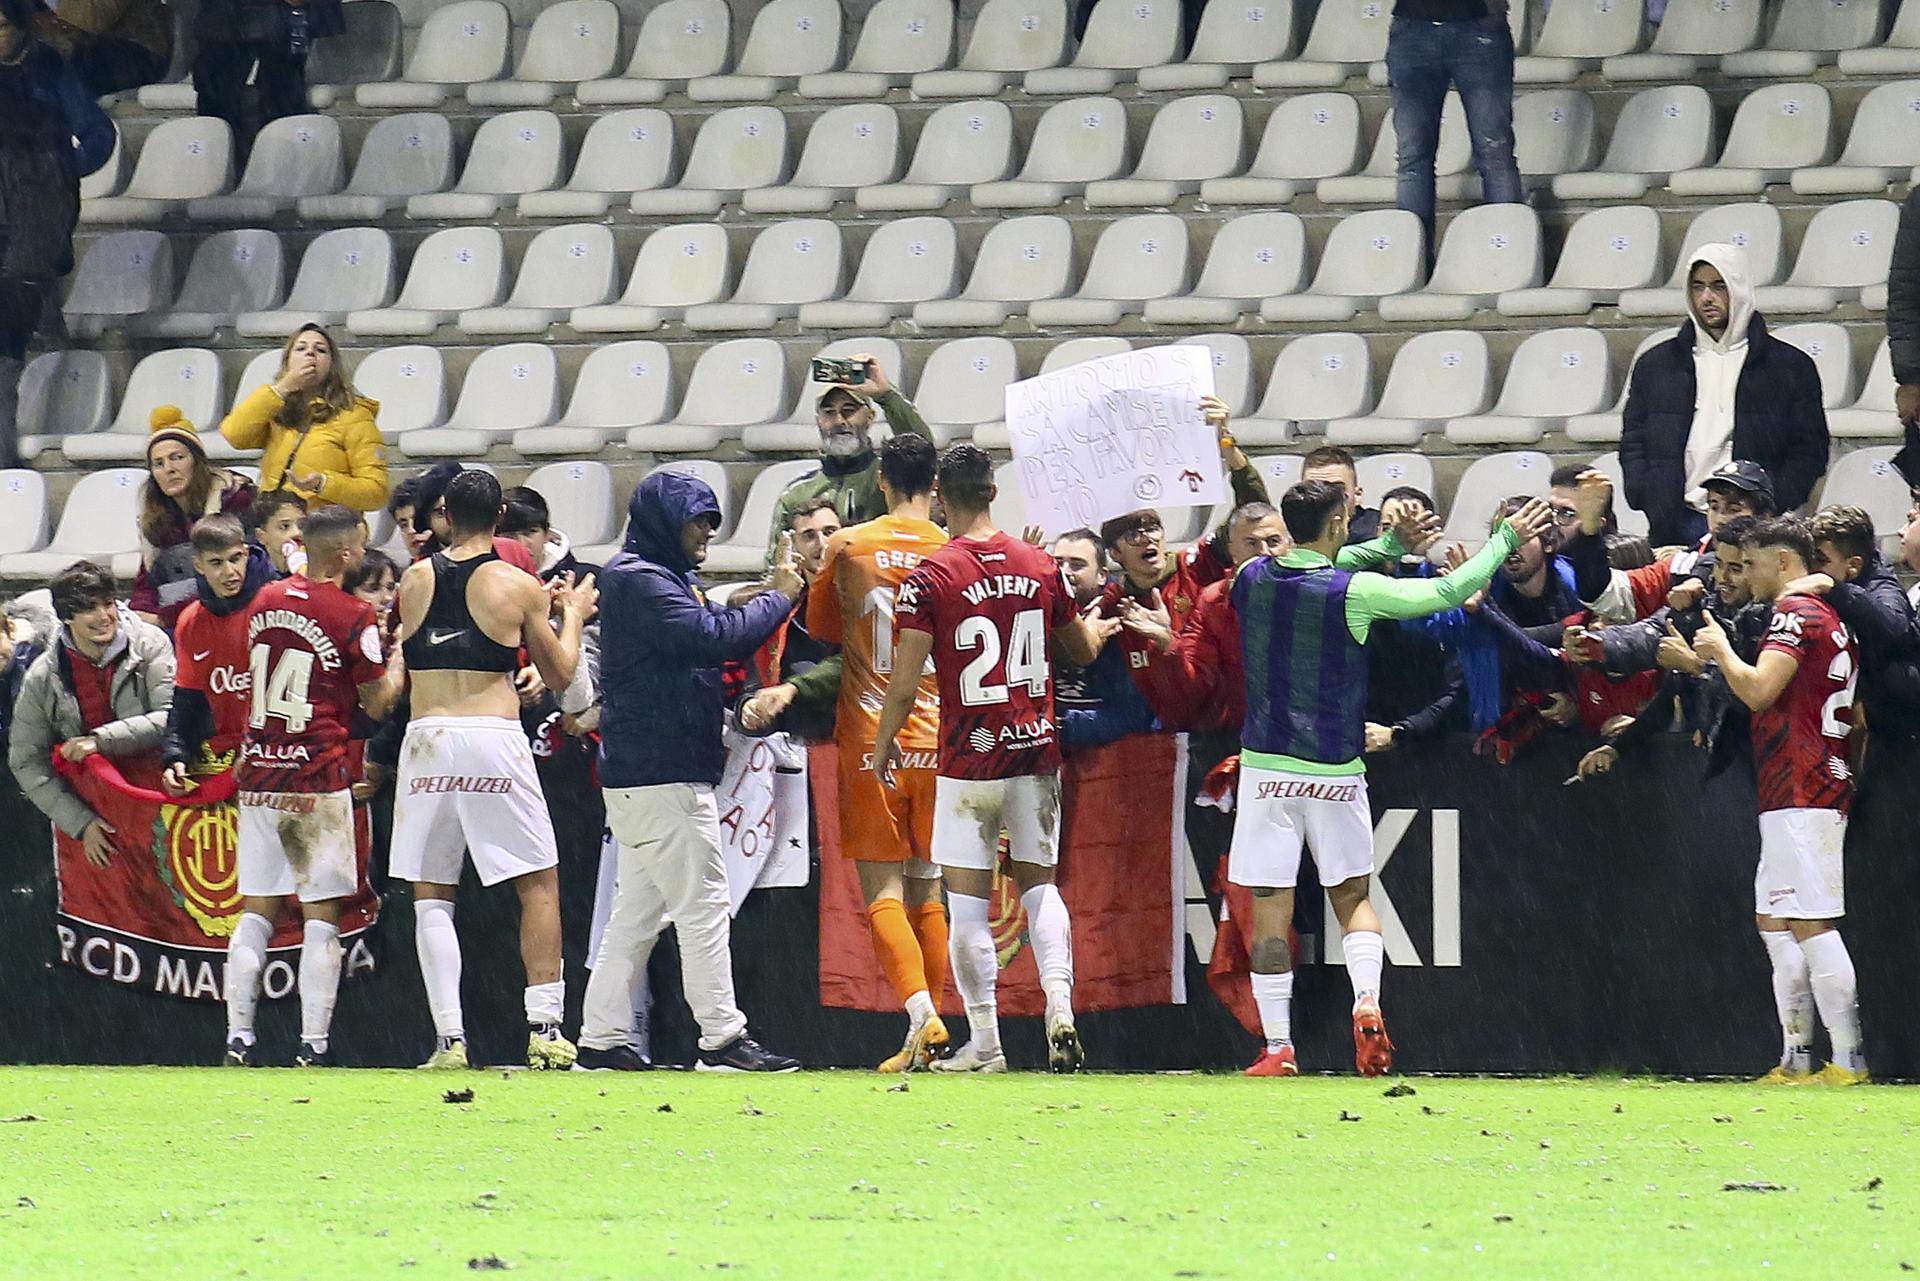 Lo s jugadores del Mallorca celebram la victoria ante el Real Unión, durante el partido de la segunda ronda de la Copa del Rey dispuado hoy martes en el Stadium Gal de Irún. EFE/GORKA ESTRADA